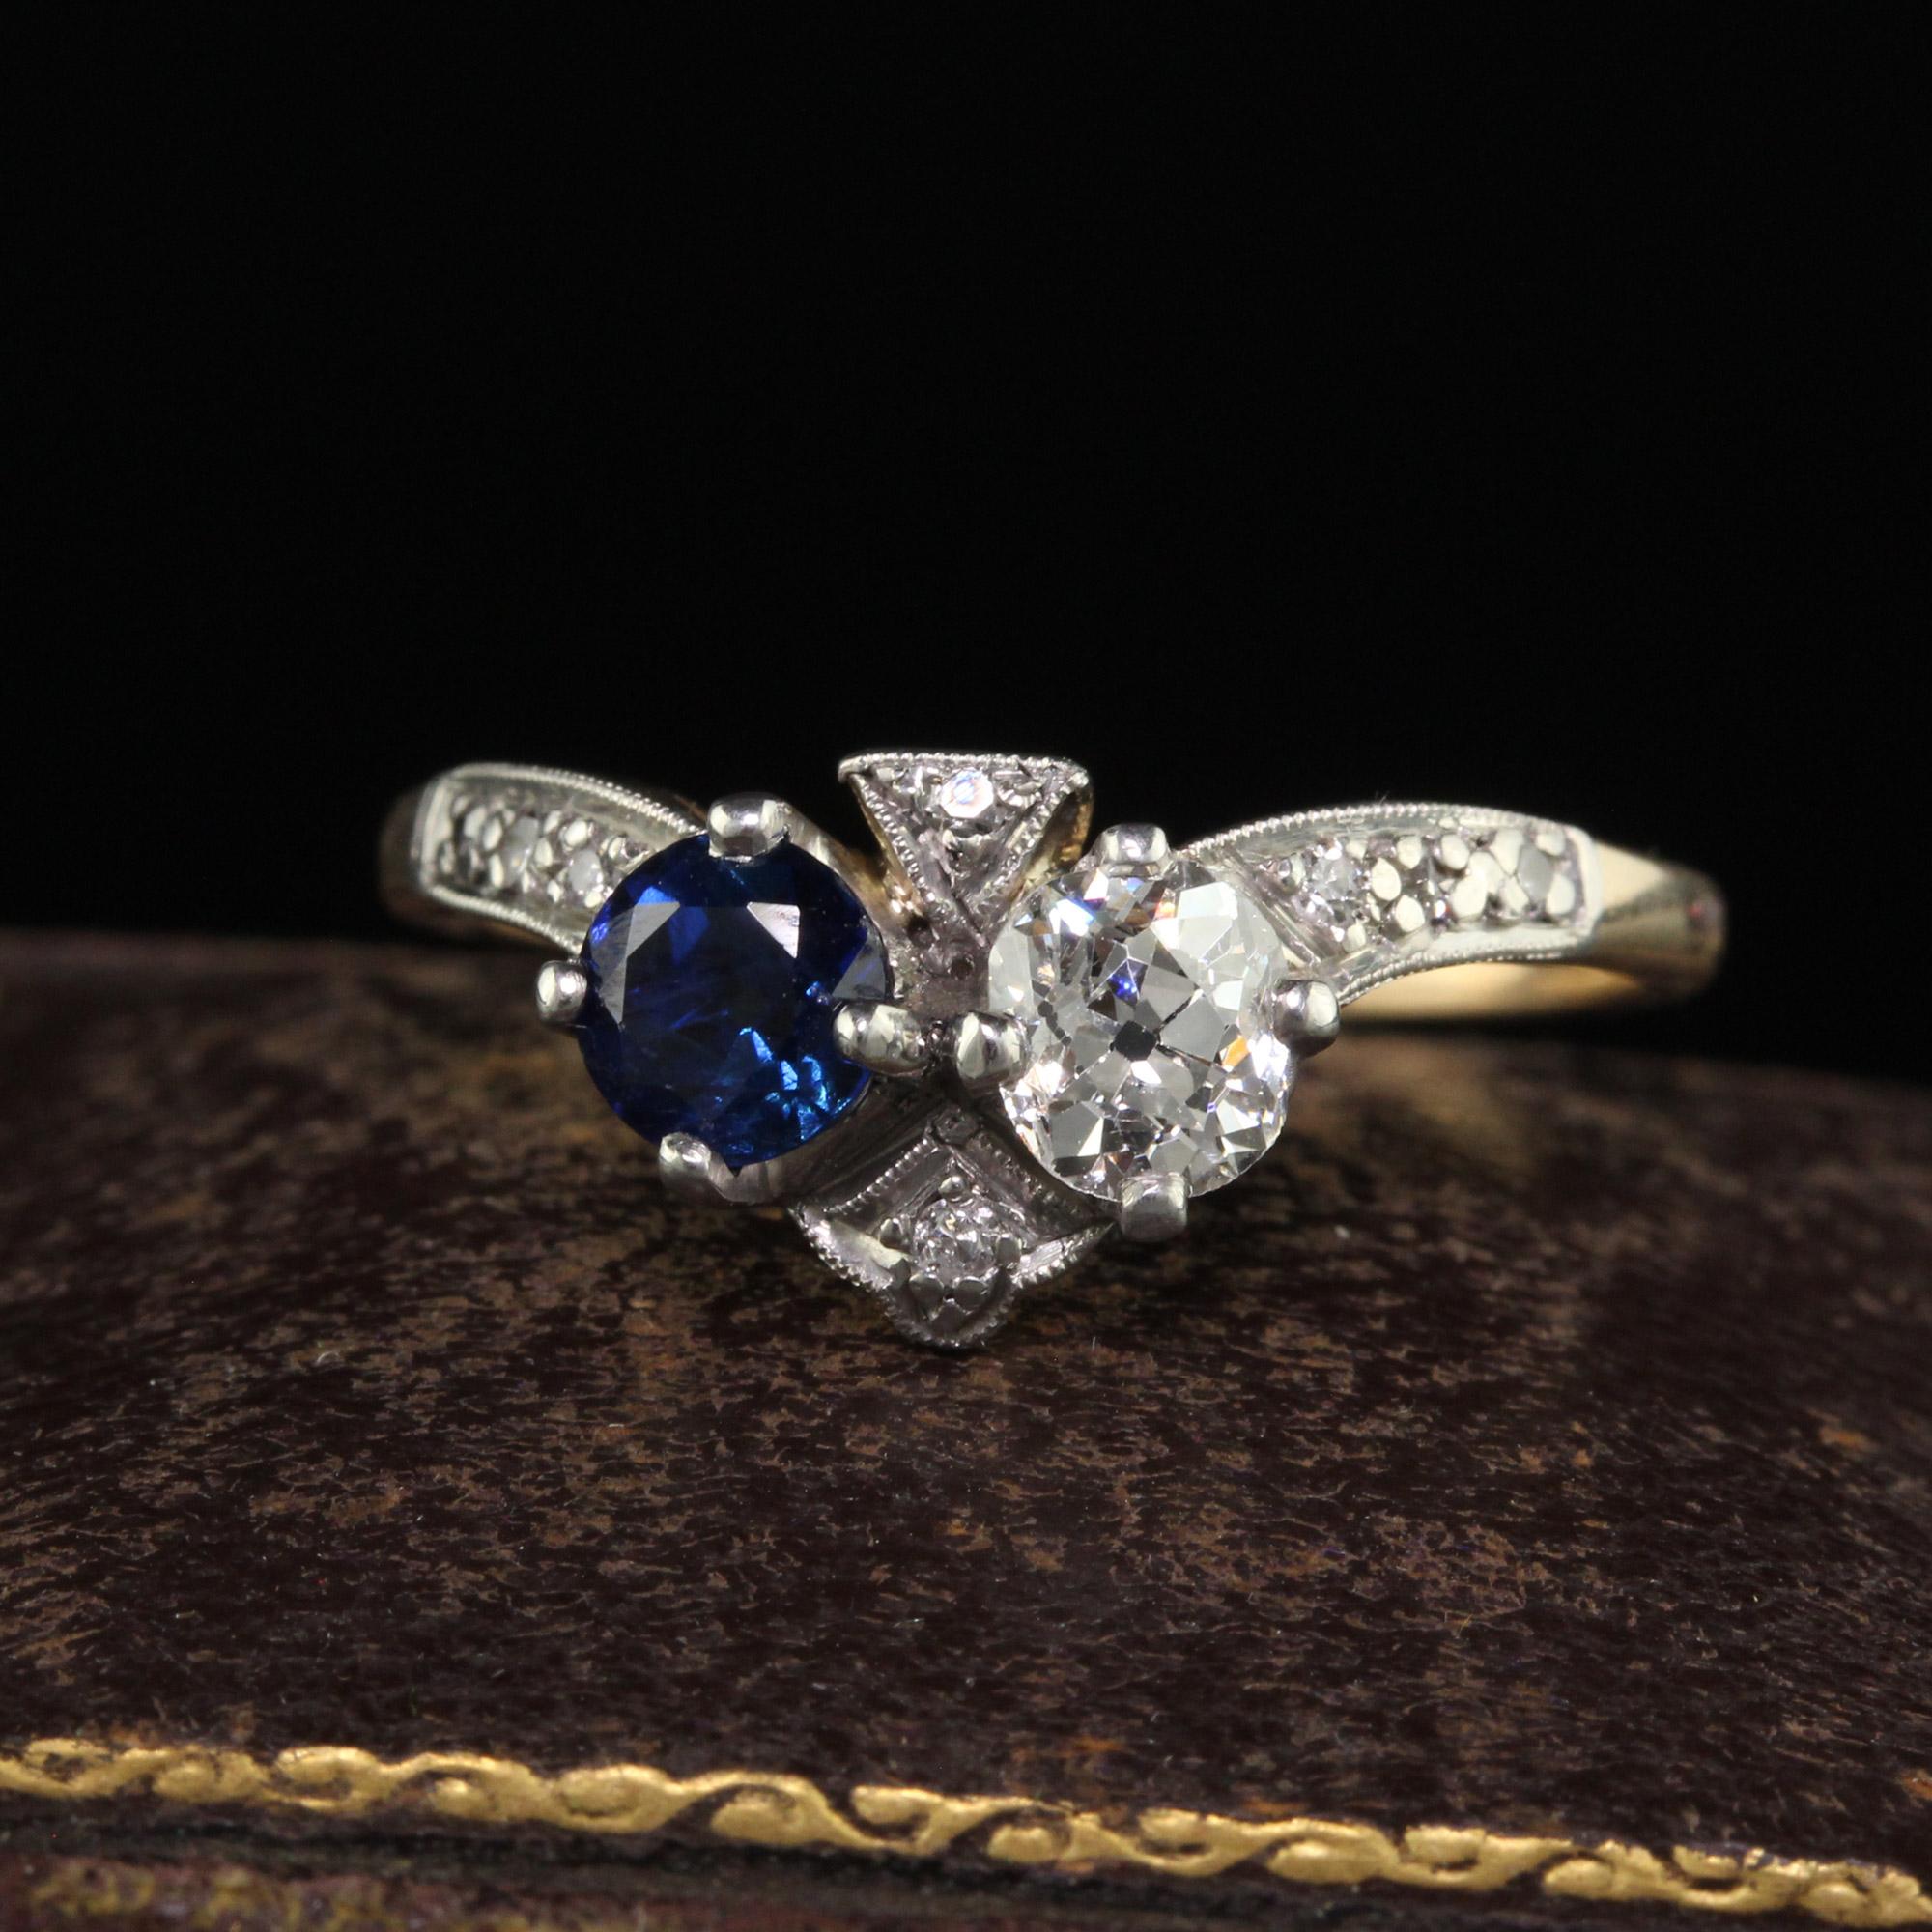 Schöne antike Edwardian 14K Gelbgold Platin Old Euro Diamant und Saphir Ring. Dieser prächtige edwardianische Diamant- und Saphirring ist aus 14 Karat Gelbgold und Platin gefertigt. Im oberen Teil des Rings befinden sich ein schöner weißer Diamant